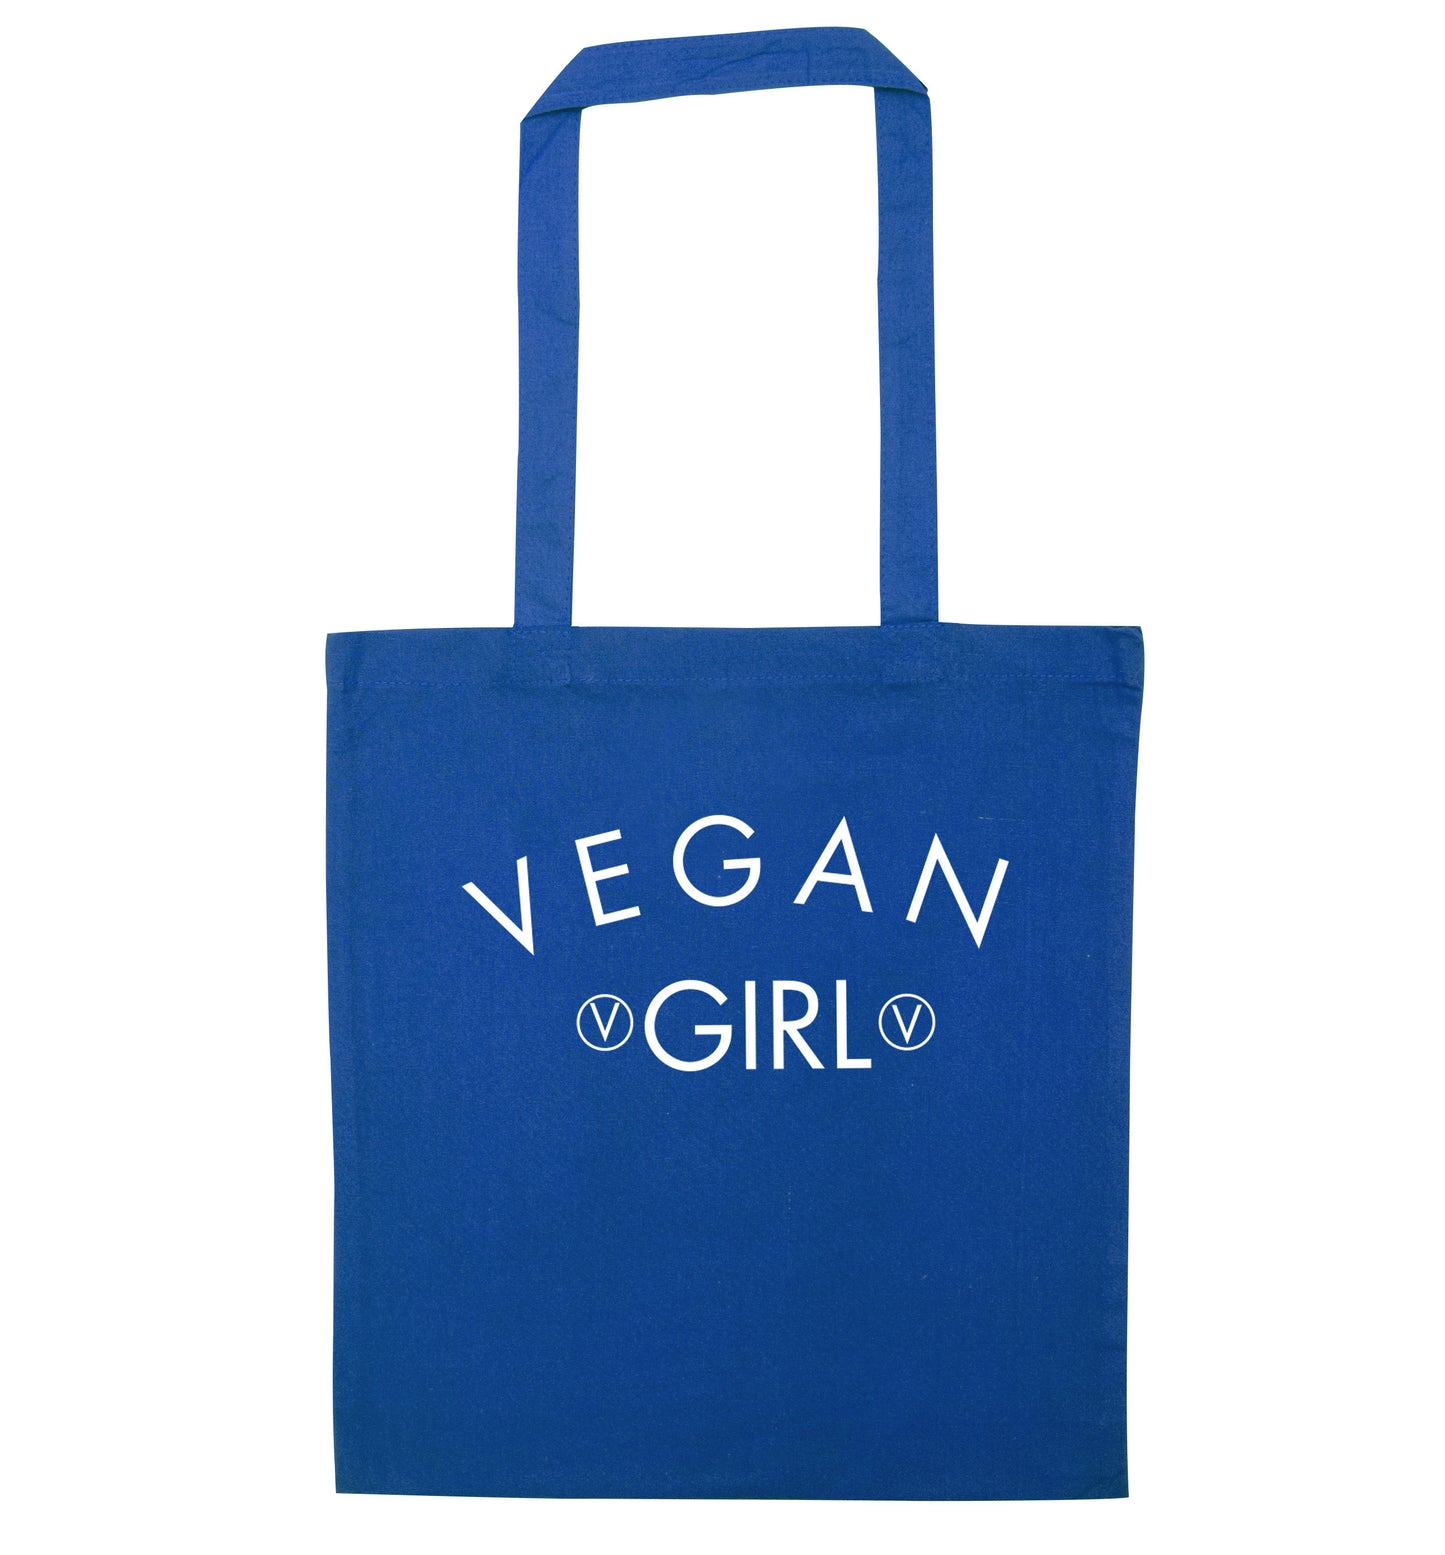 Vegan girl blue tote bag